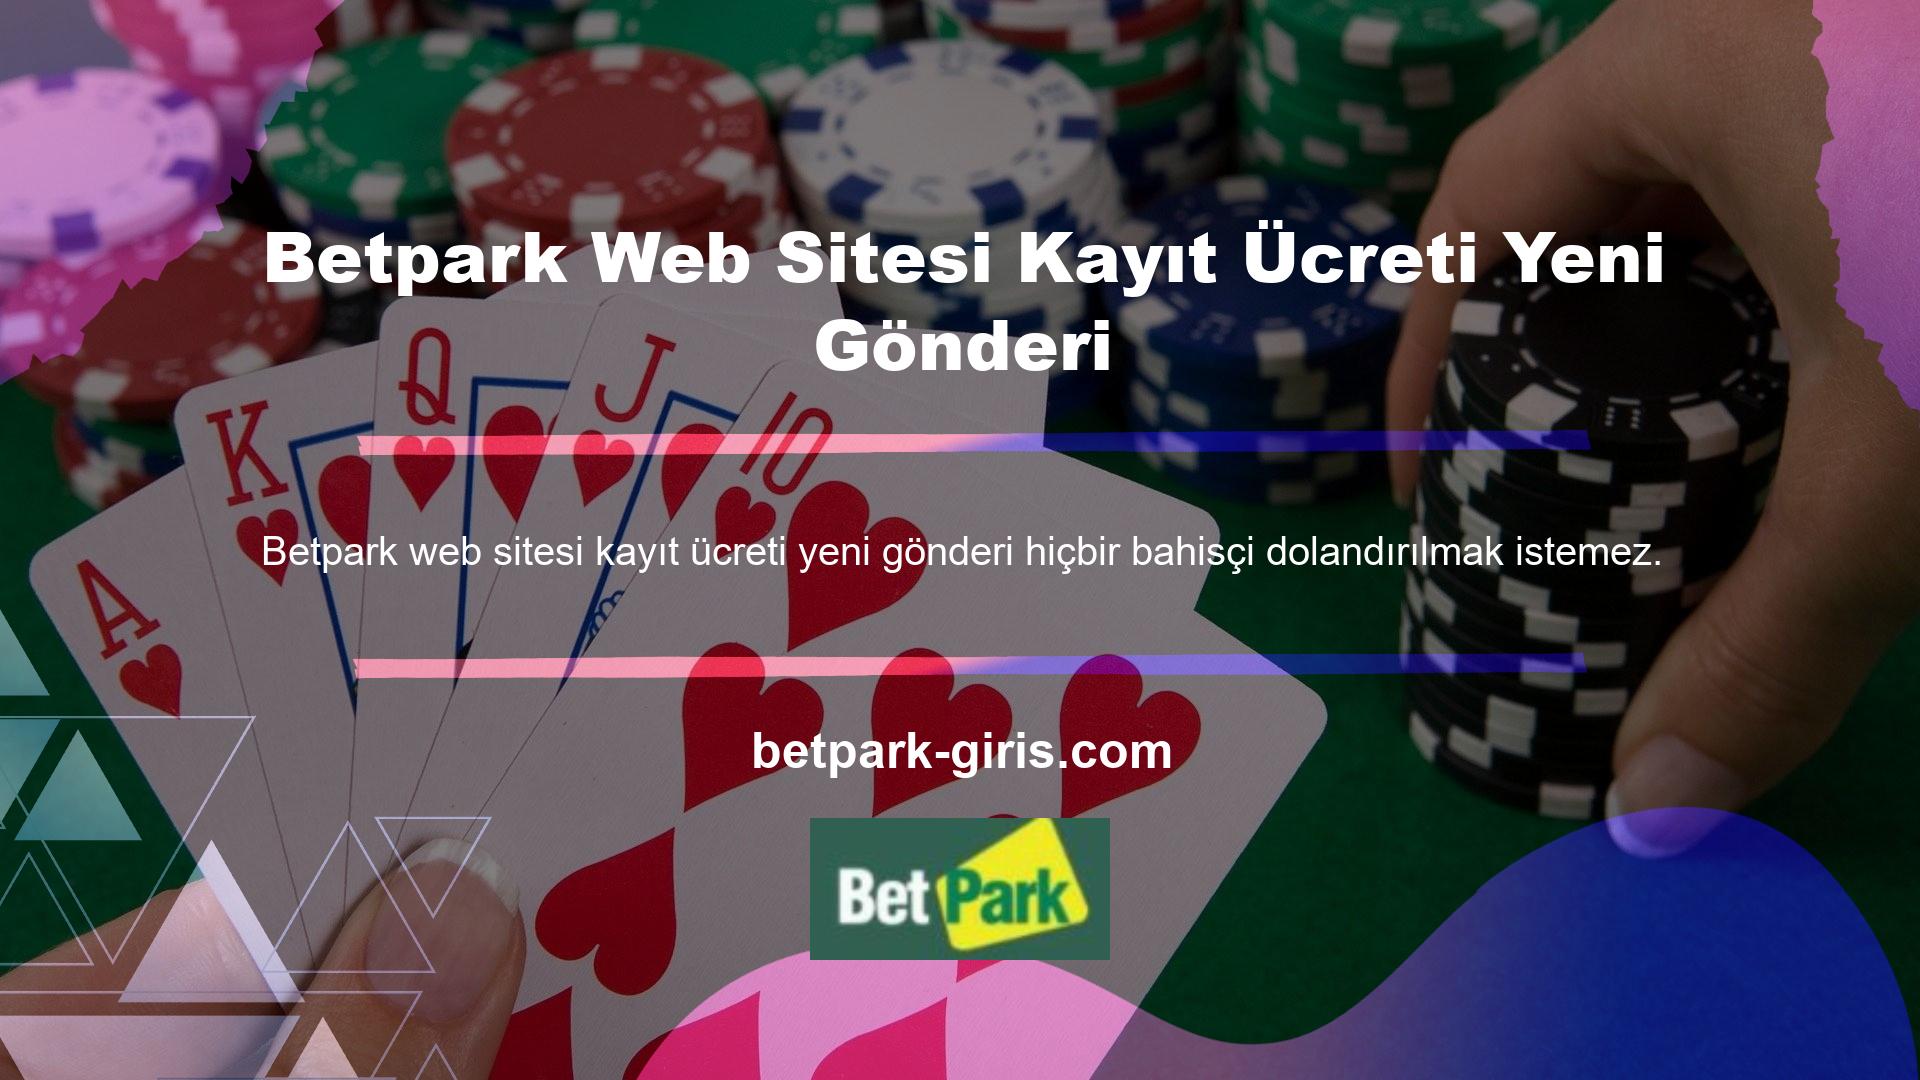 Şu anda Betpark web sitesi kayıt ücreti, Opera gibi tarayıcıları kullanan yeni casino siteleri için bir kayıt ücretidir ve mevcut casino sitesinde herhangi bir dolandırıcılık sorunu olup olmadığının kontrol edilmesini gerektirir